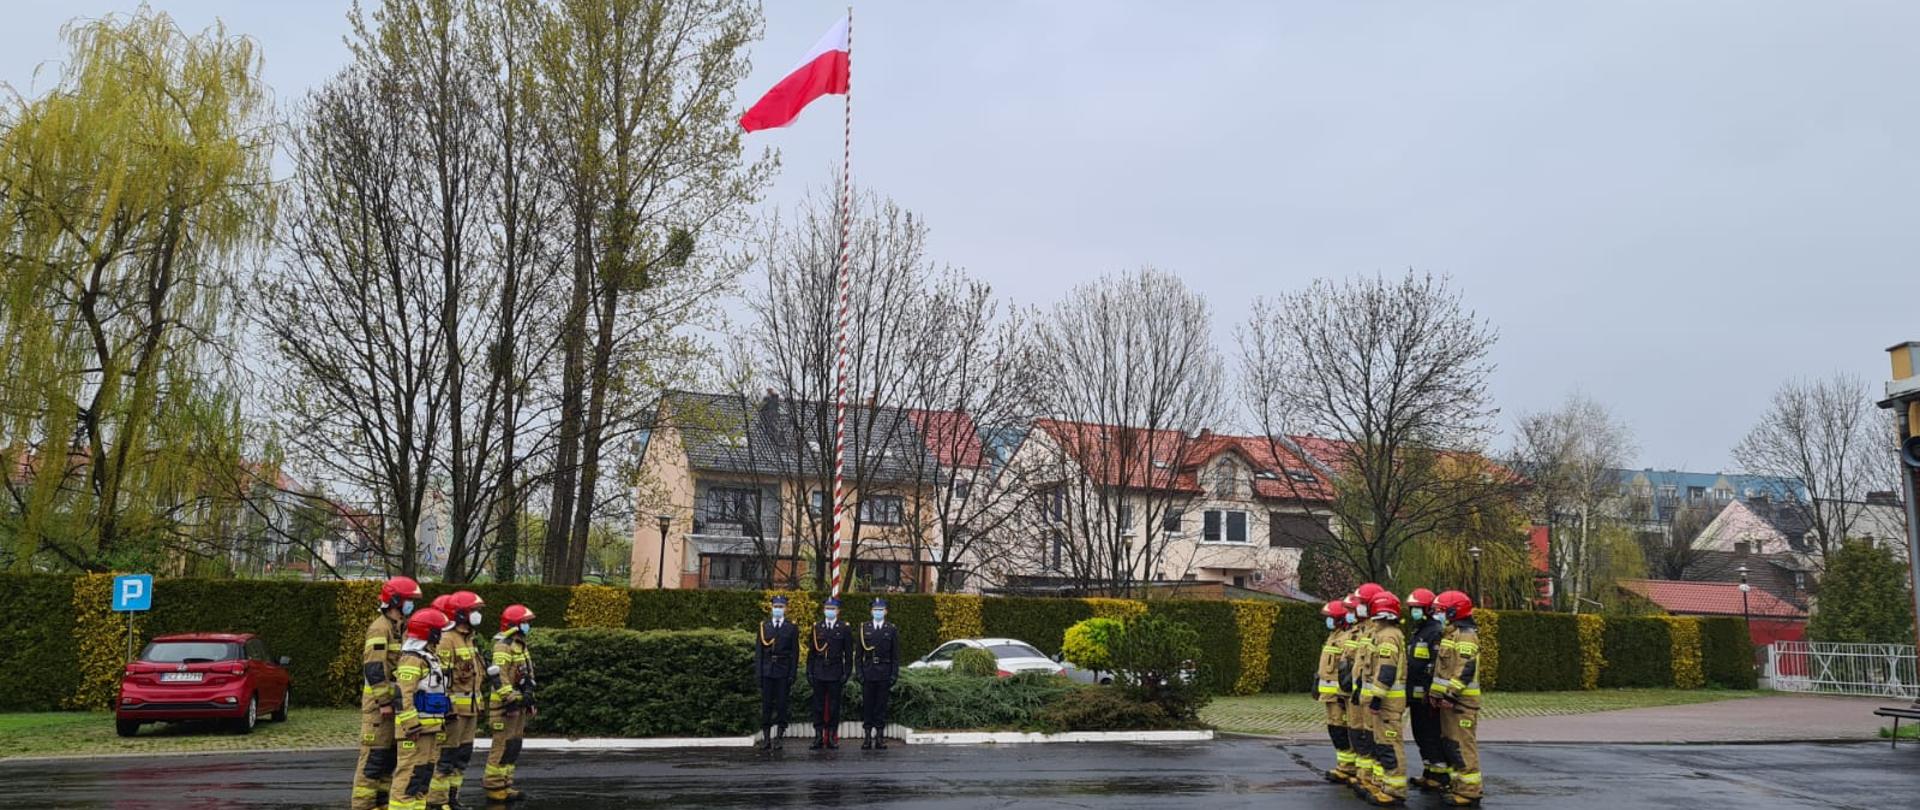 Na zdjęciu strażacy stoją na placu strażnicy w dwuszeregu ubrani w ubrania specjalne koloru piaskowego. Jedna zmiana z prawej druga z lewej strony zdjęcia. Po środku maszt na którym znajduje się flaga Polski z przed masztem poczet flagowy ubrani w ubrania wyjściowe.